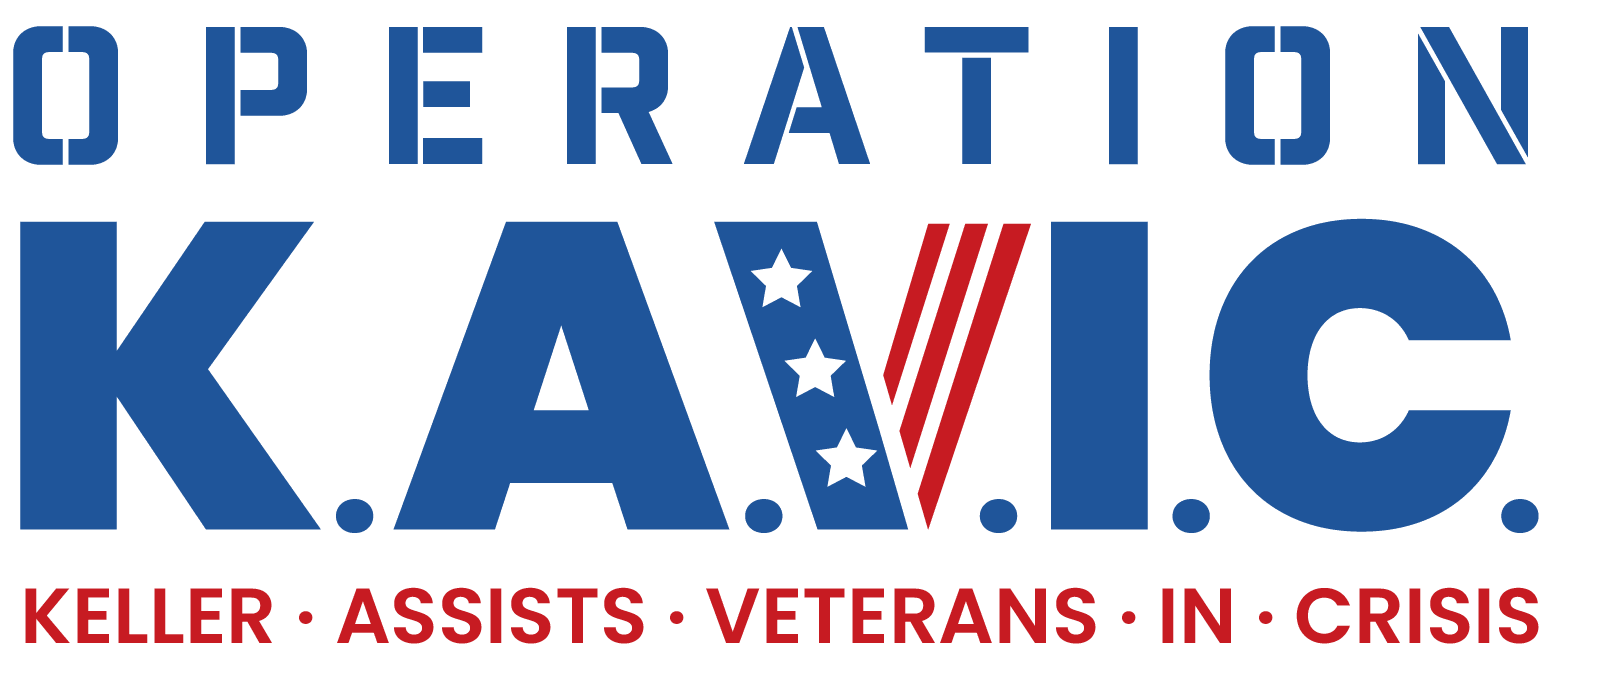 Operation K.A.V.I.C. logo